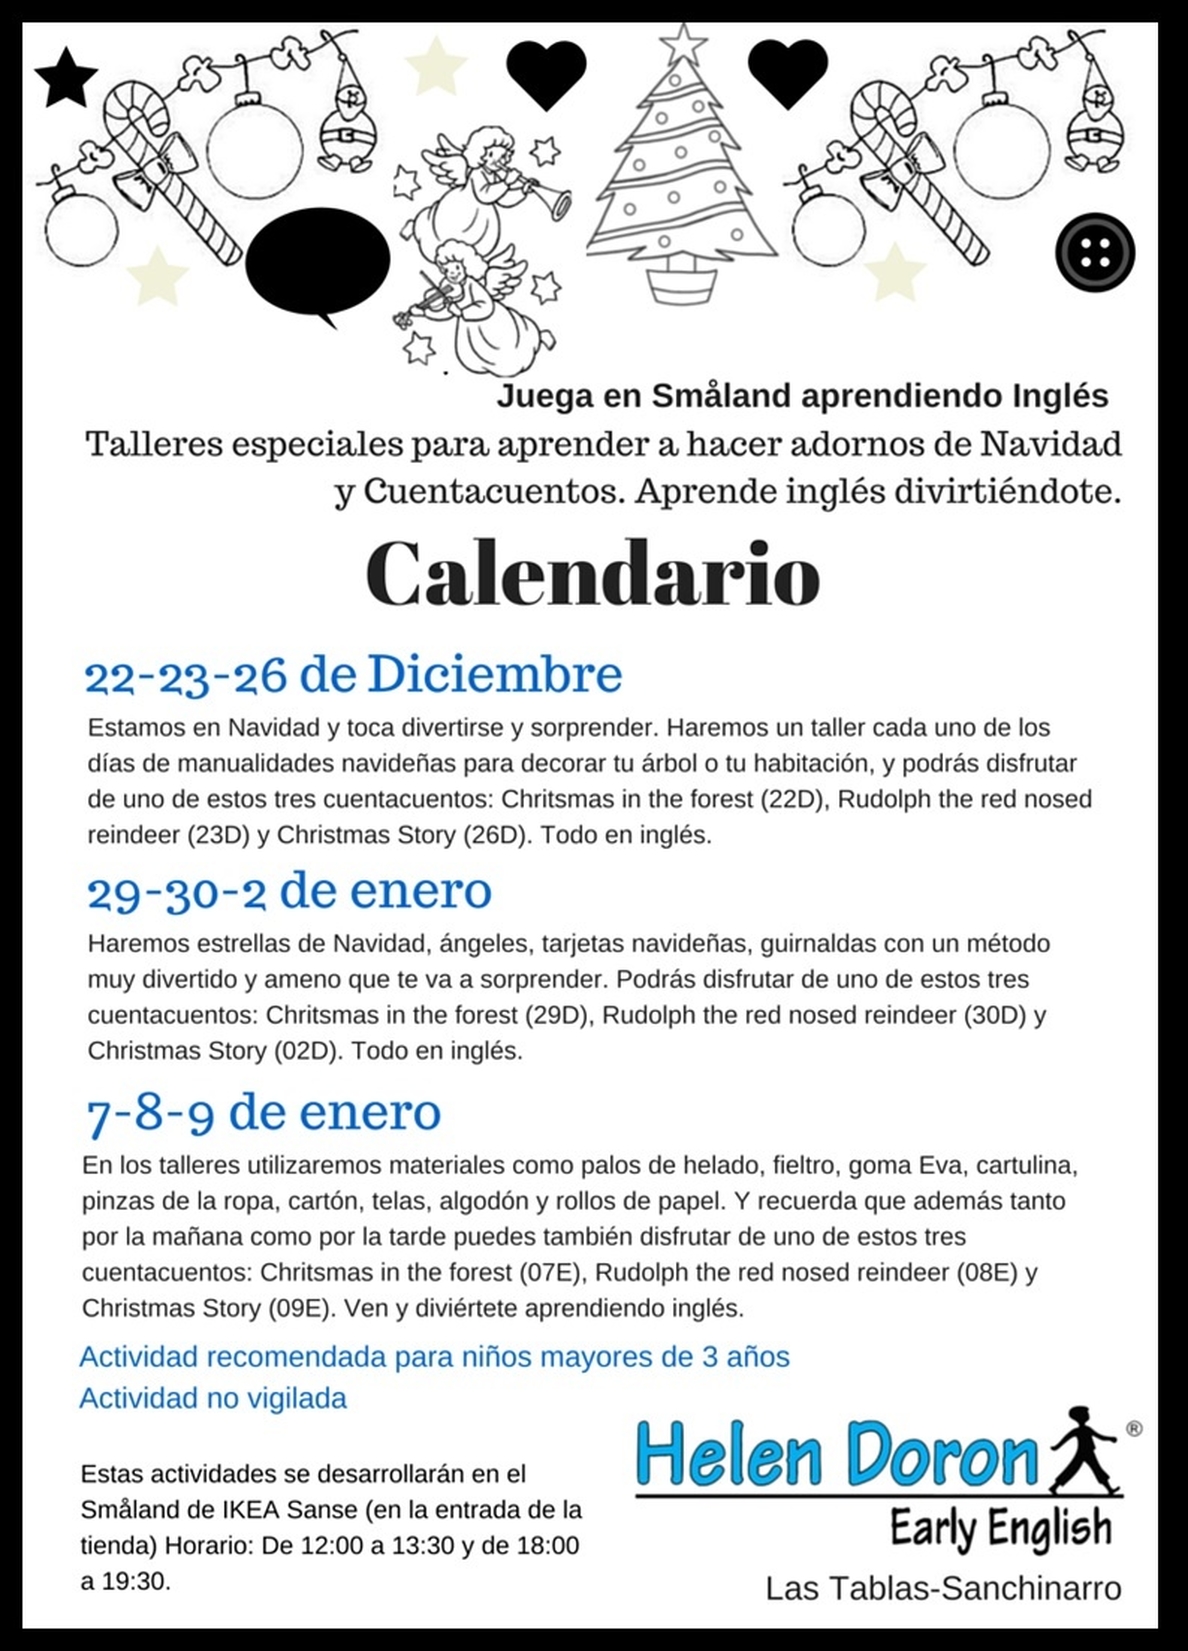 El centro Helen Doron Las Tablas-Sanchinarro organiza talleres y cuentacuentos en Ikea de San Sebastián de los Reyes